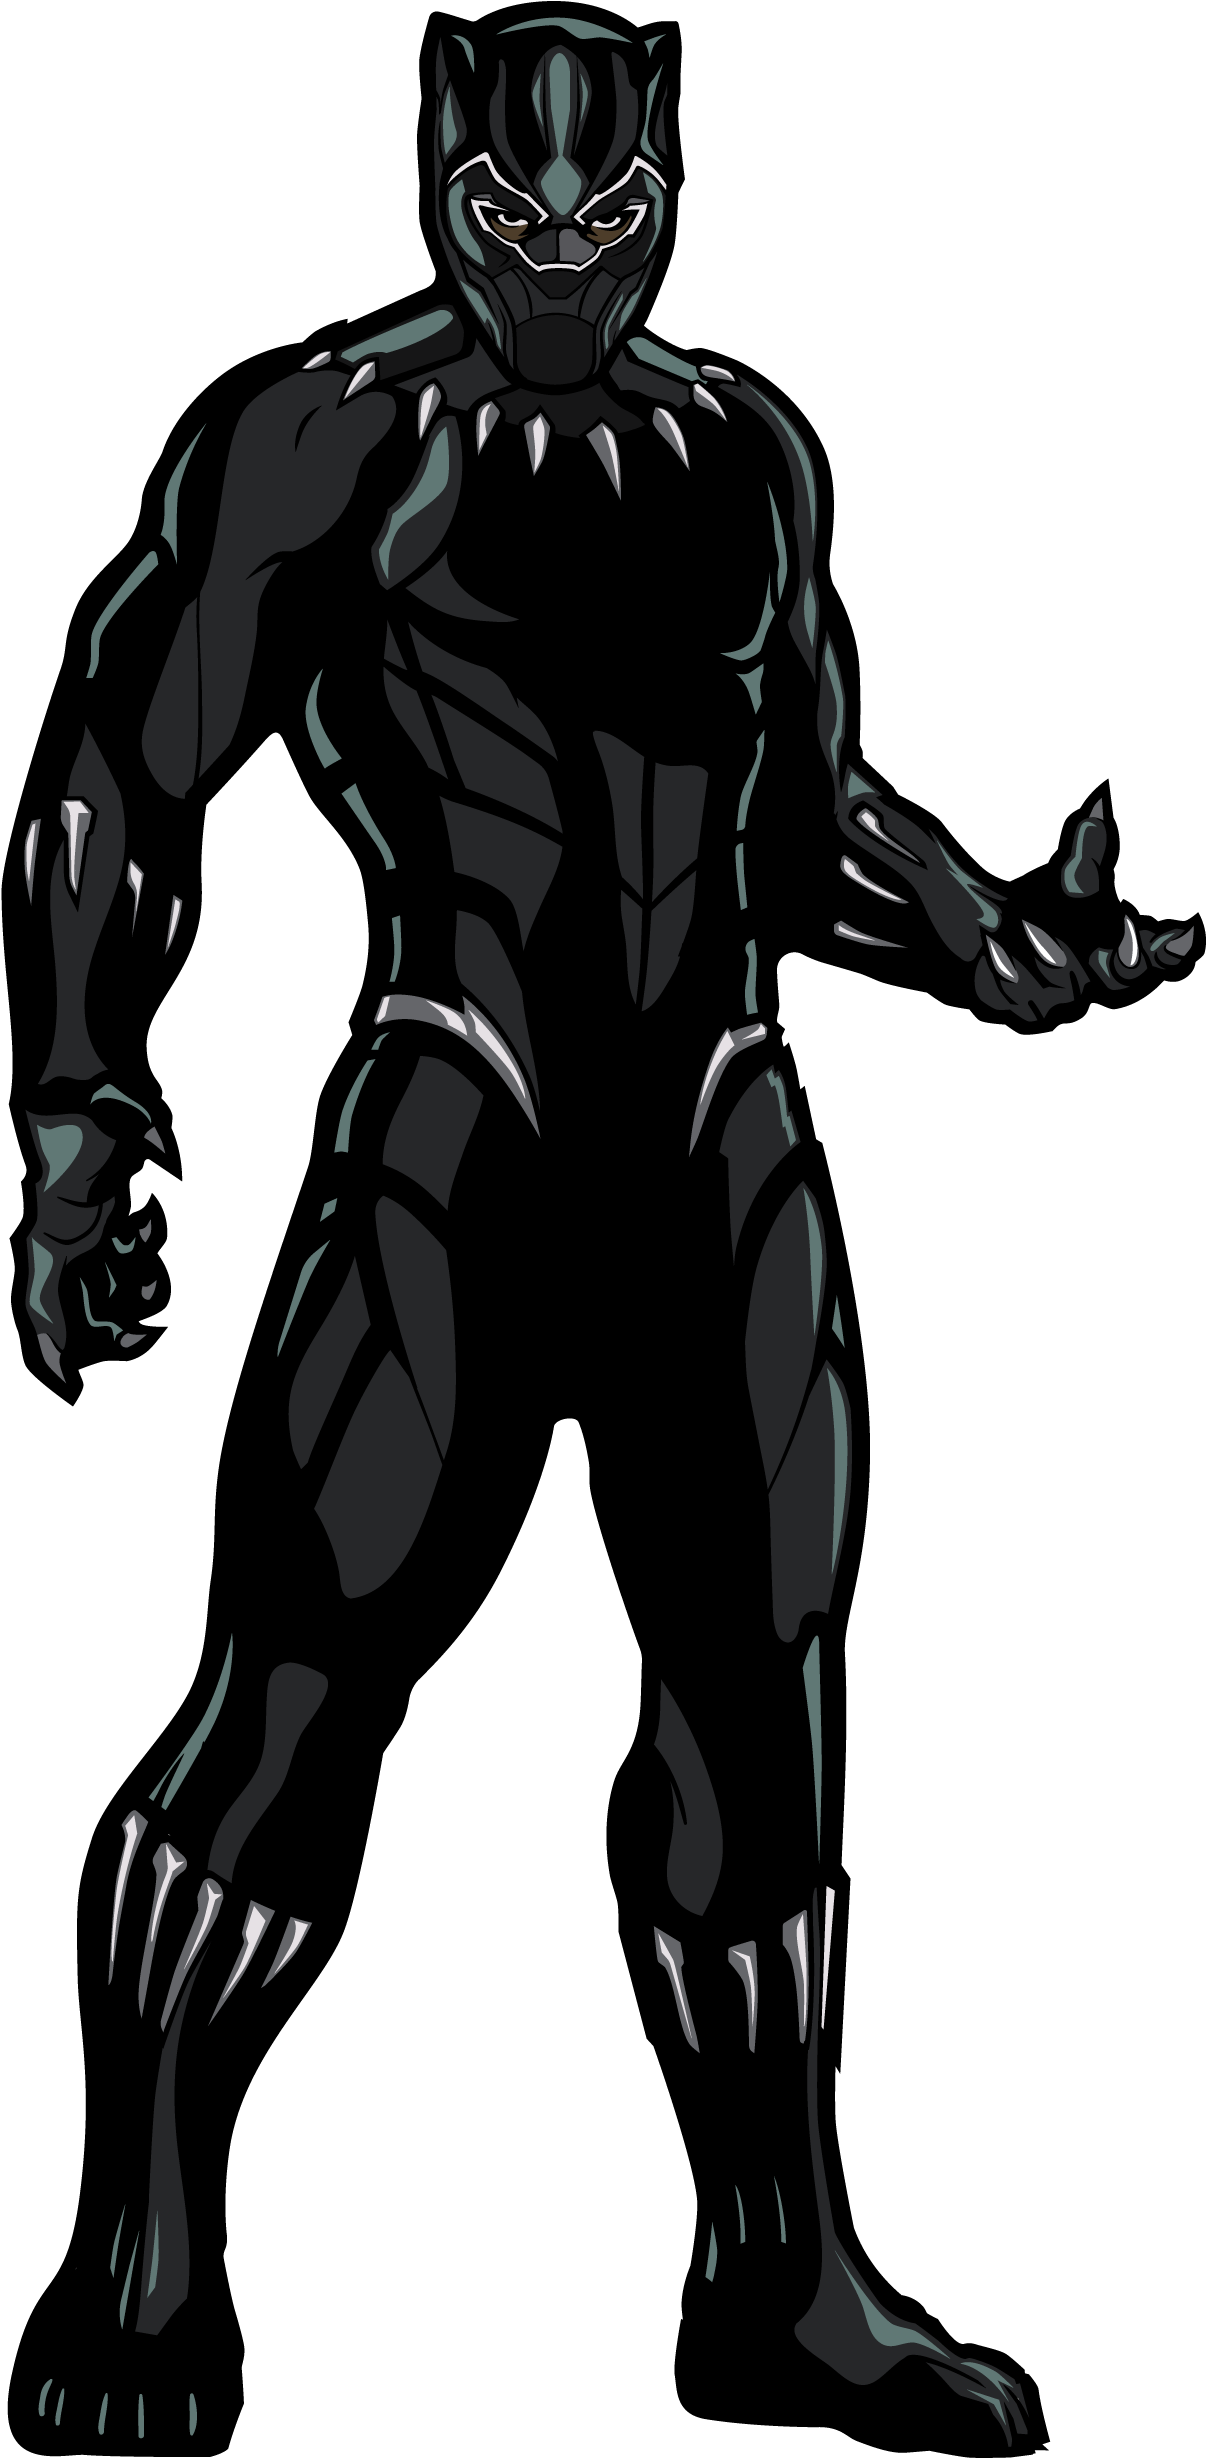 Free Black Panther Transparent, Download Free Clip Art, Free